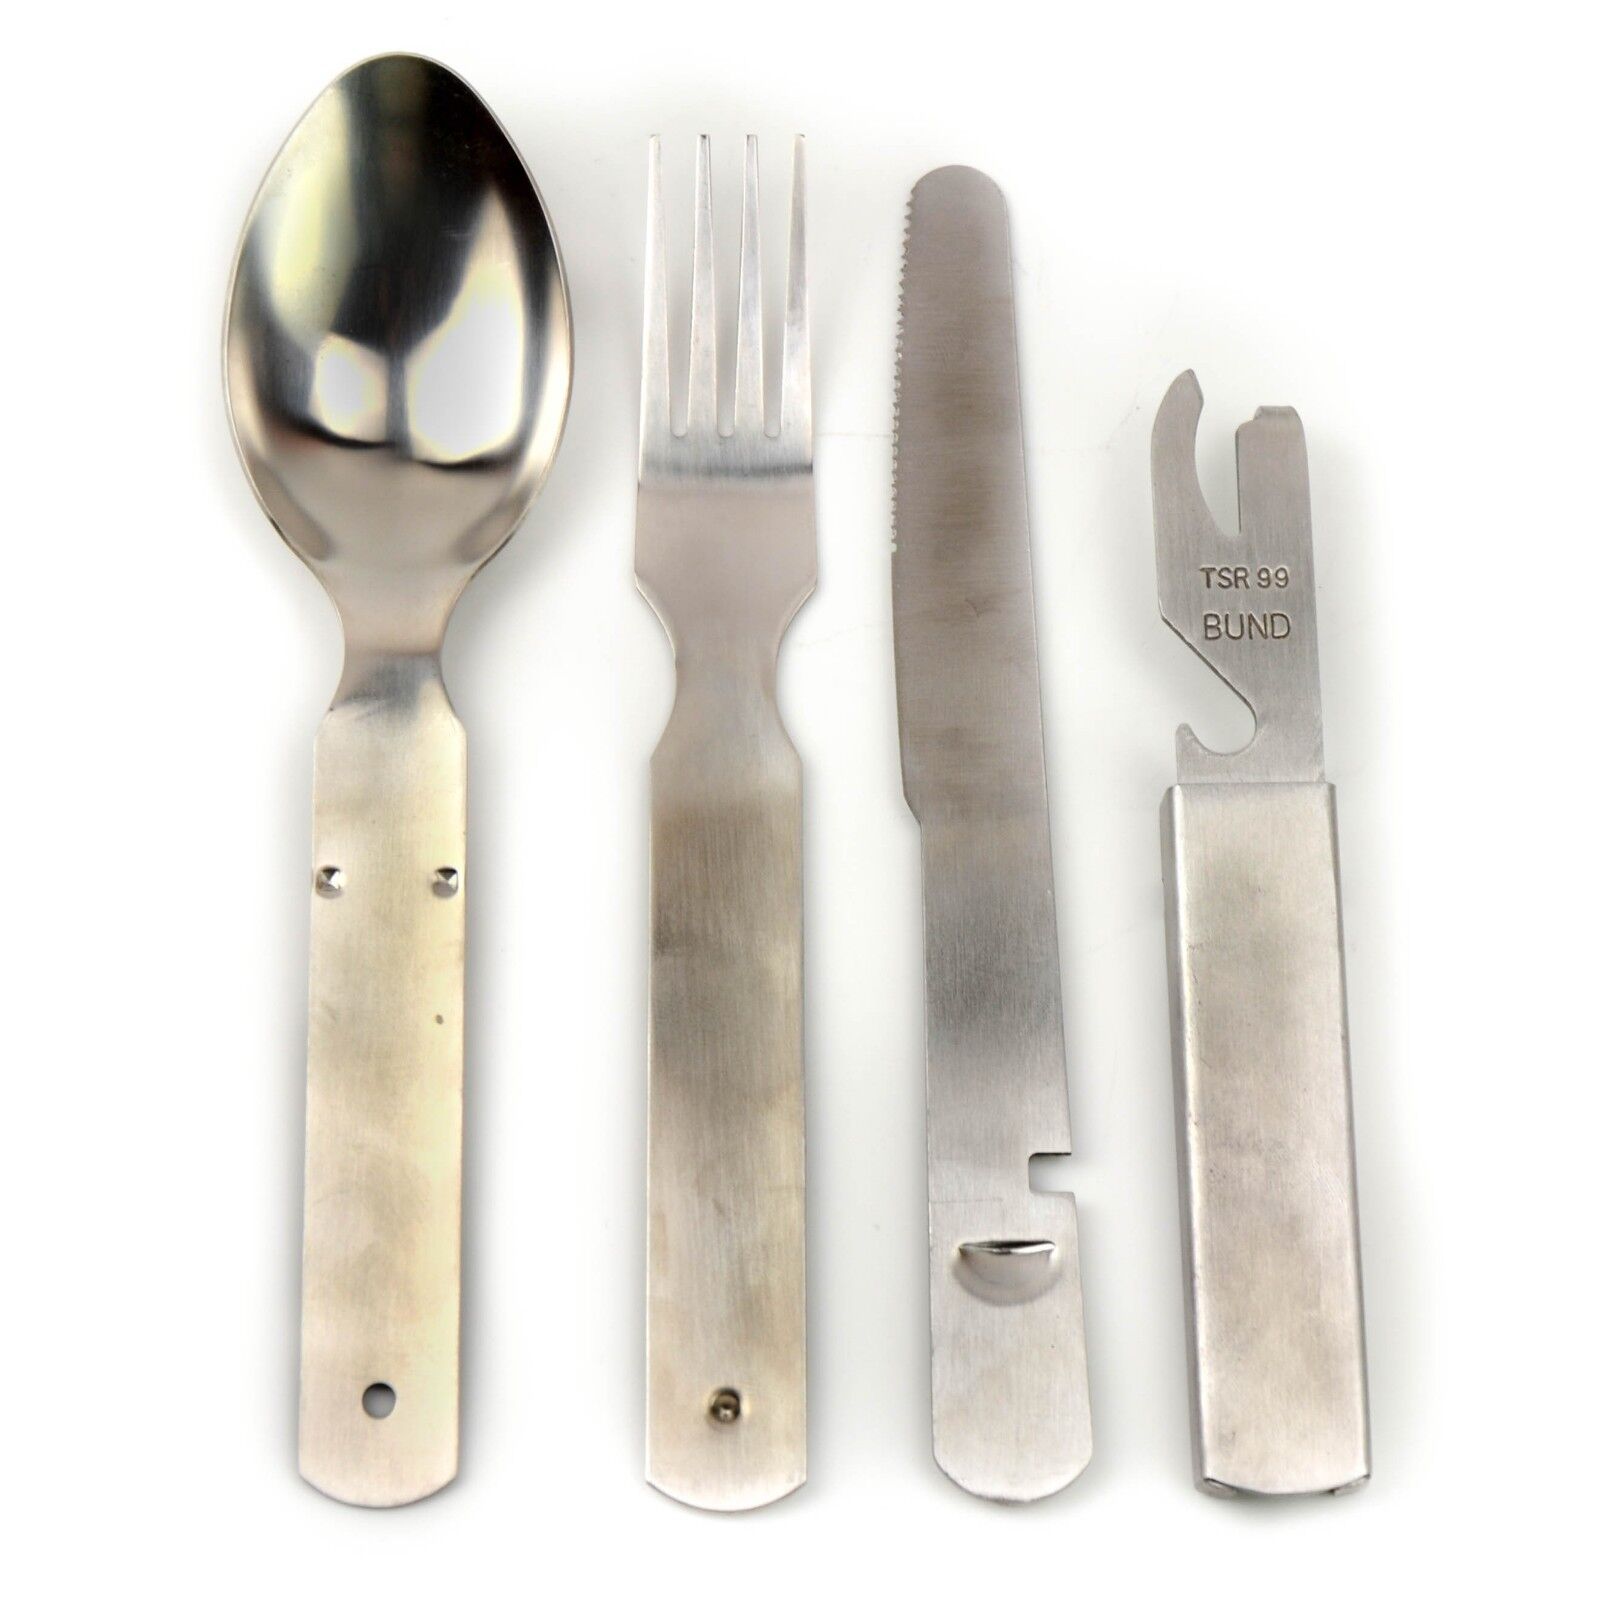 Genuine German army cutlery set eating utensils NEW multitool kit flatware NEW